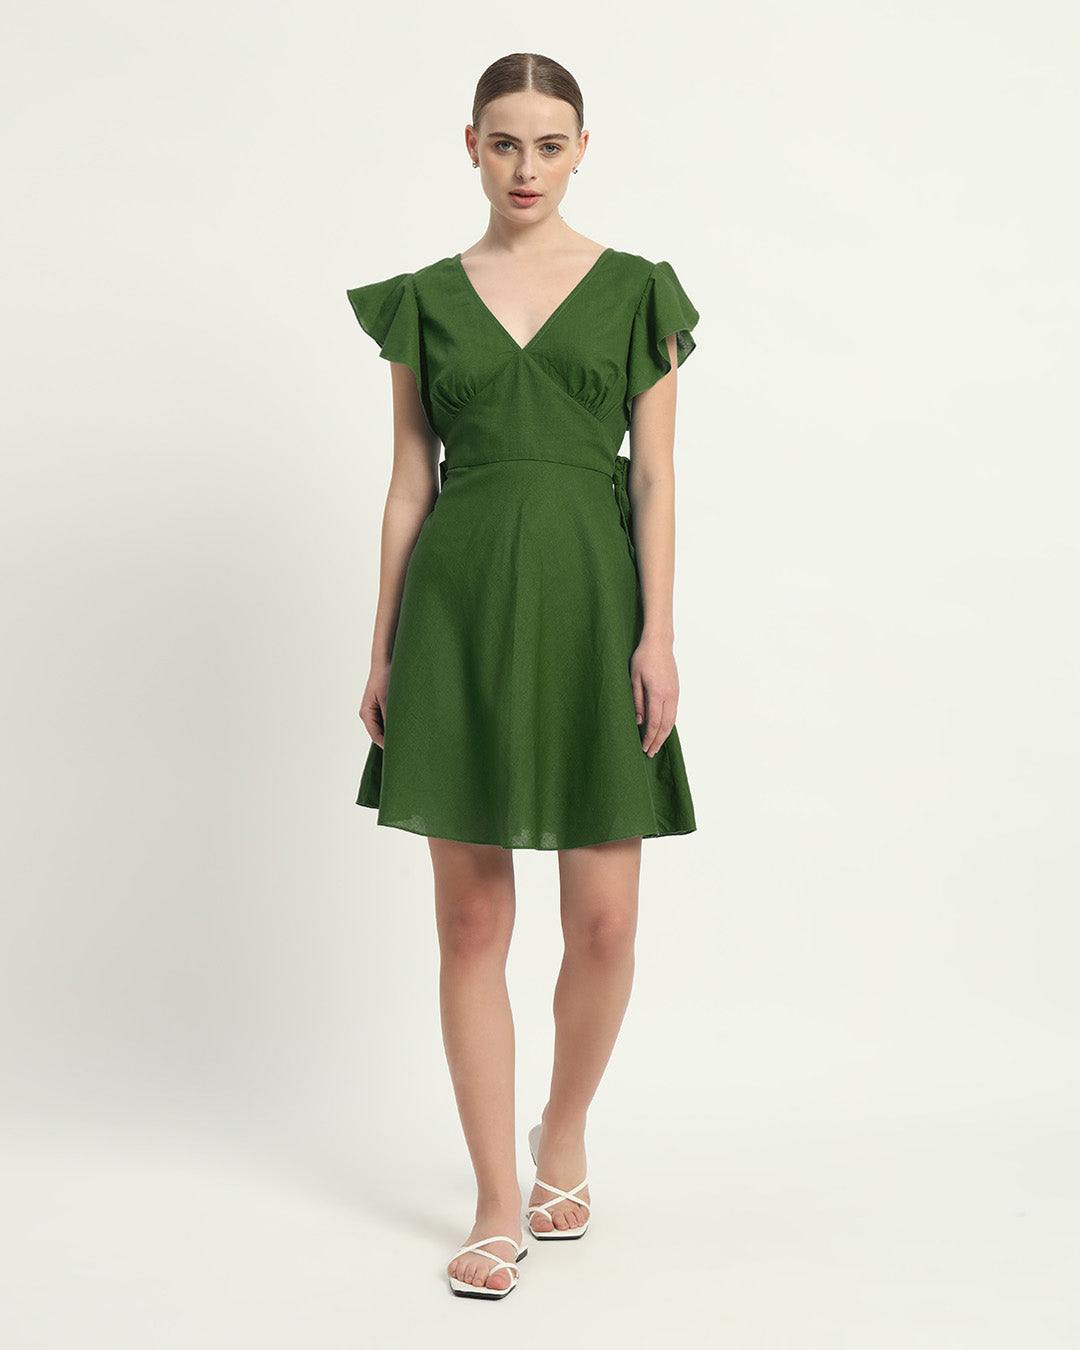 The Fairlie Emerald Cotton Dress